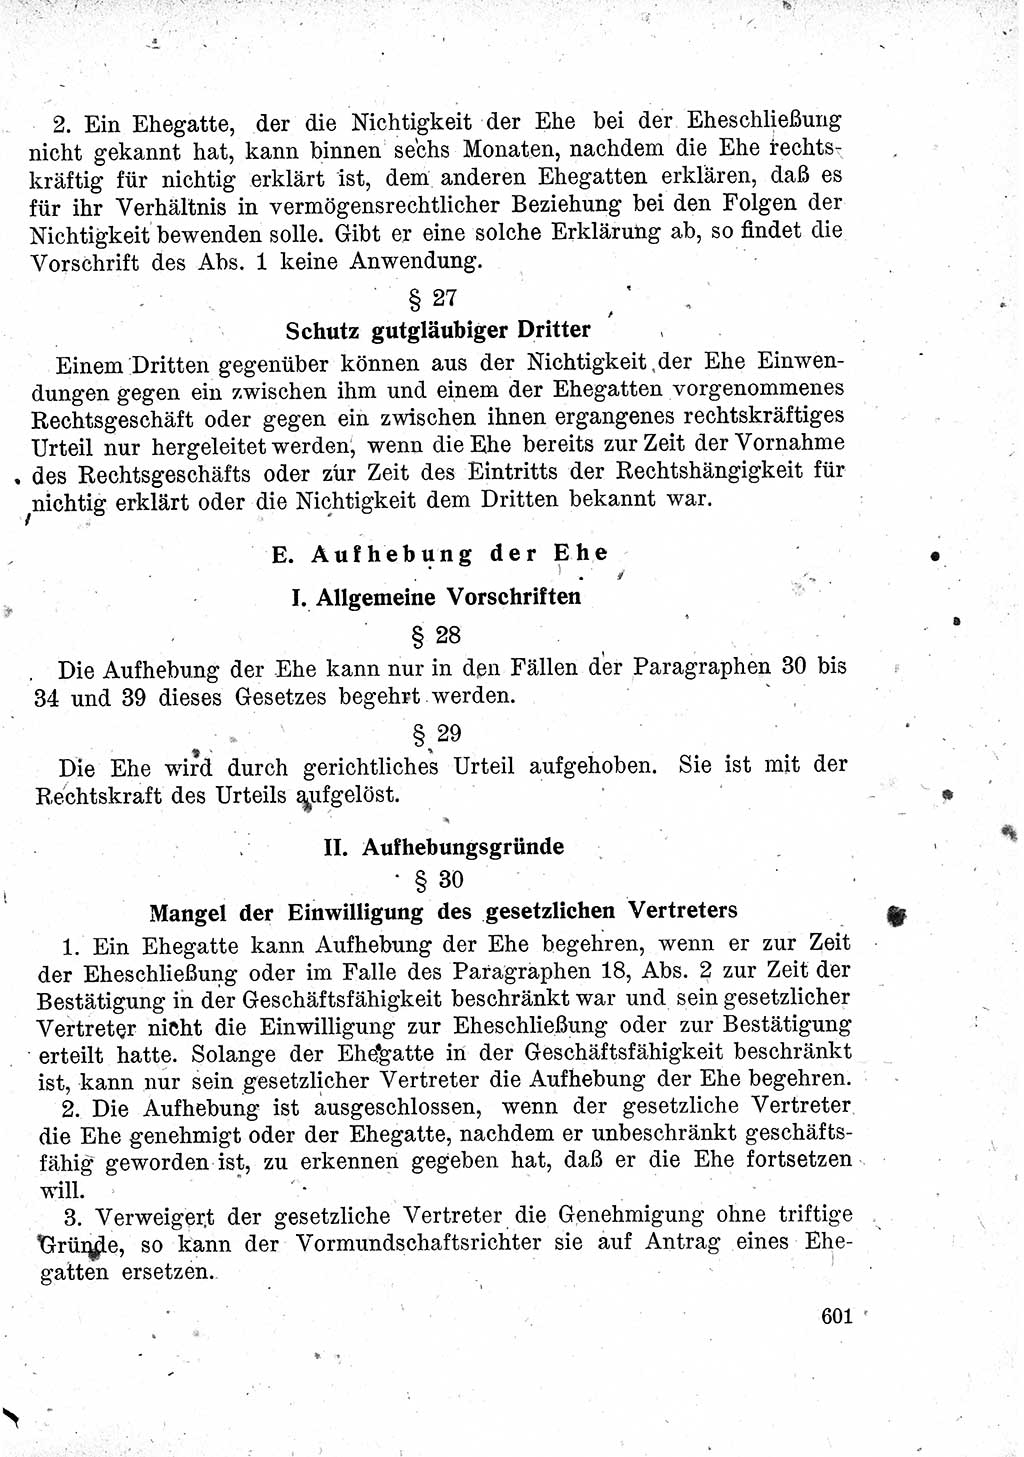 Das Recht der Besatzungsmacht (Deutschland), Proklamationen, Deklerationen, Verordnungen, Gesetze und Bekanntmachungen 1947, Seite 601 (R. Bes. Dtl. 1947, S. 601)